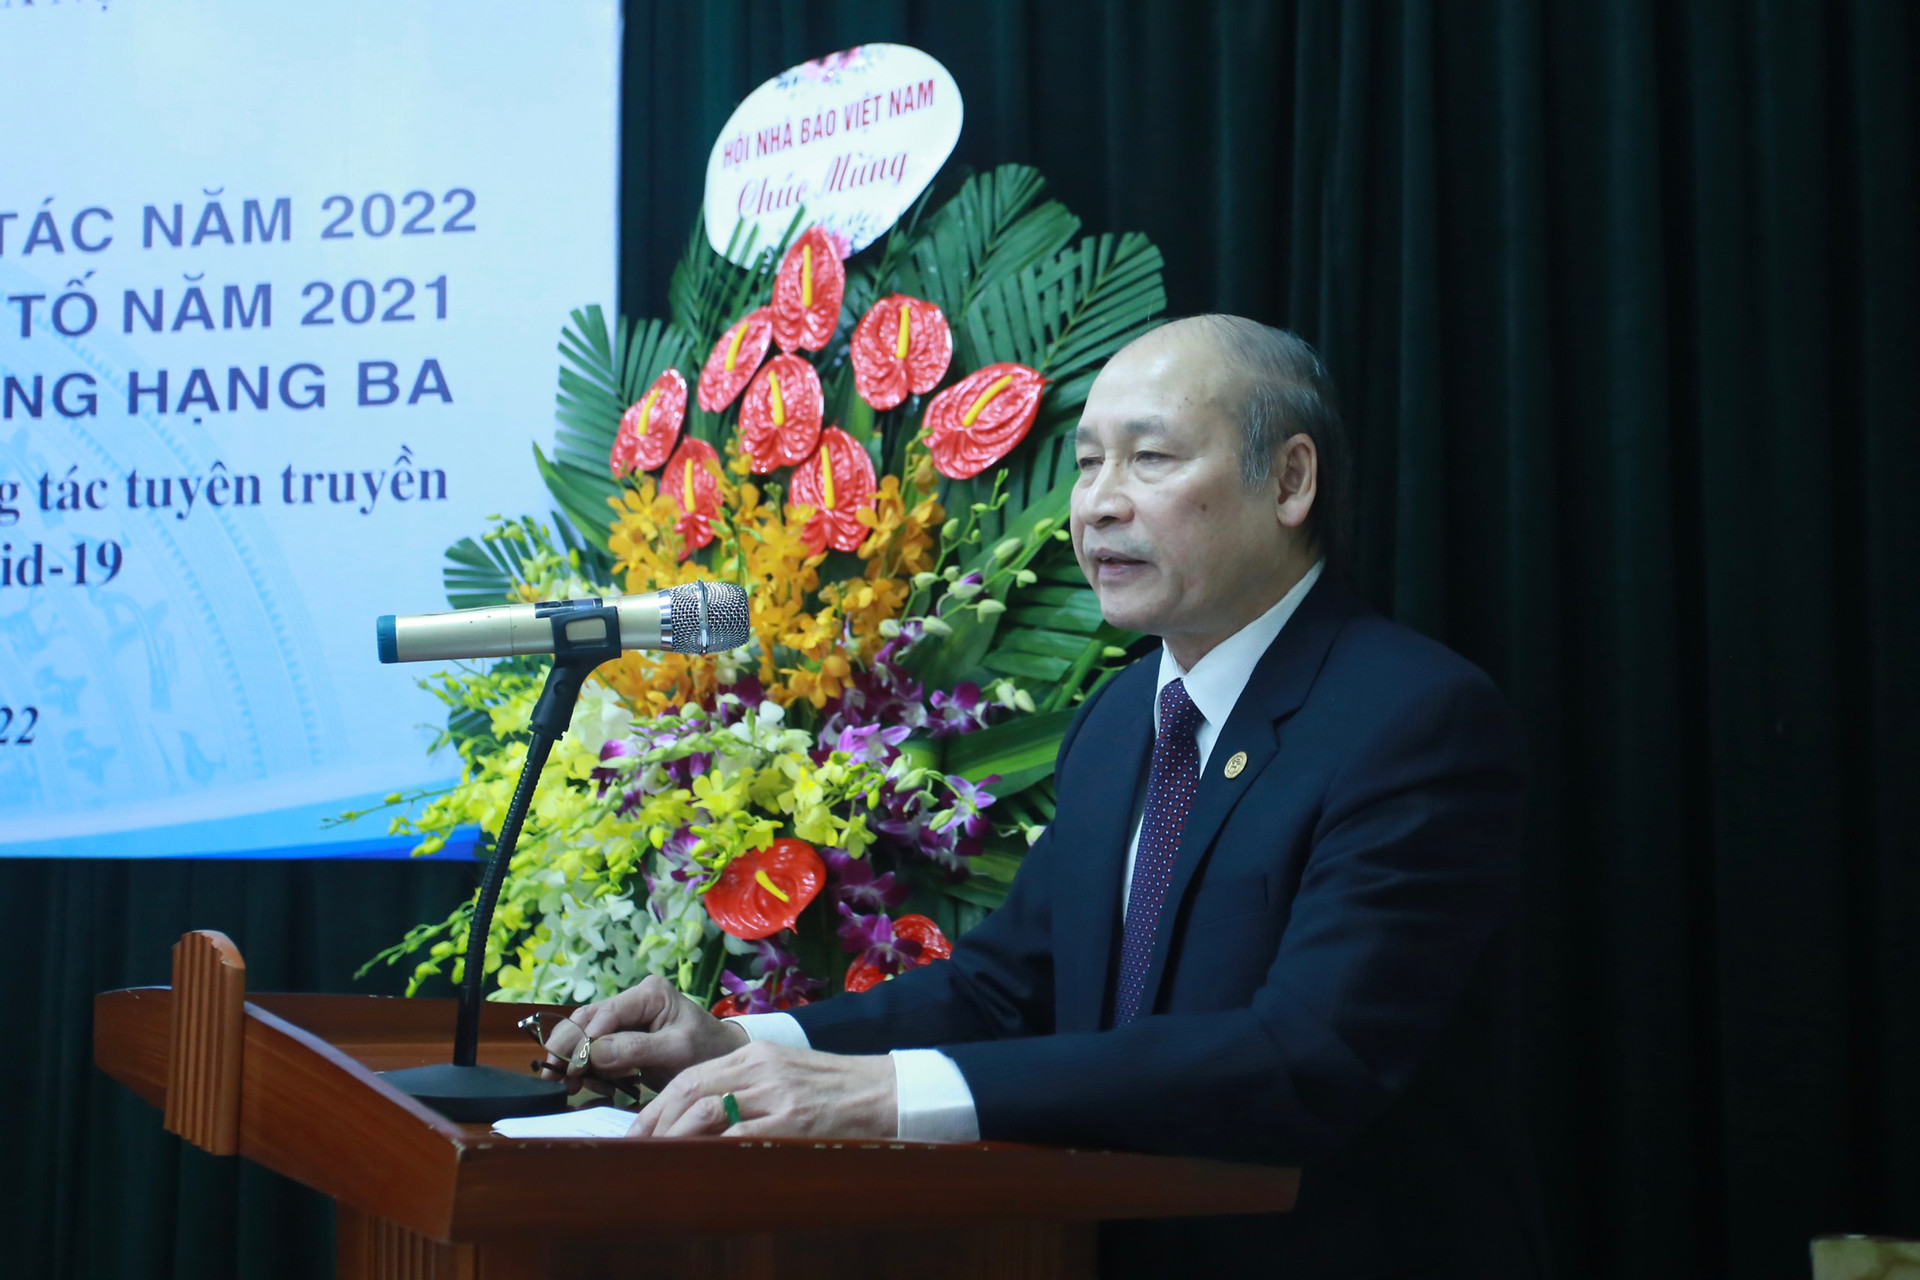 Hội Nhà báo Hà Nội trao giải Báo chí Ngô Tất Tố năm 2021 và đưa ra phương hướng triển khai nhiệm vụ năm 2022